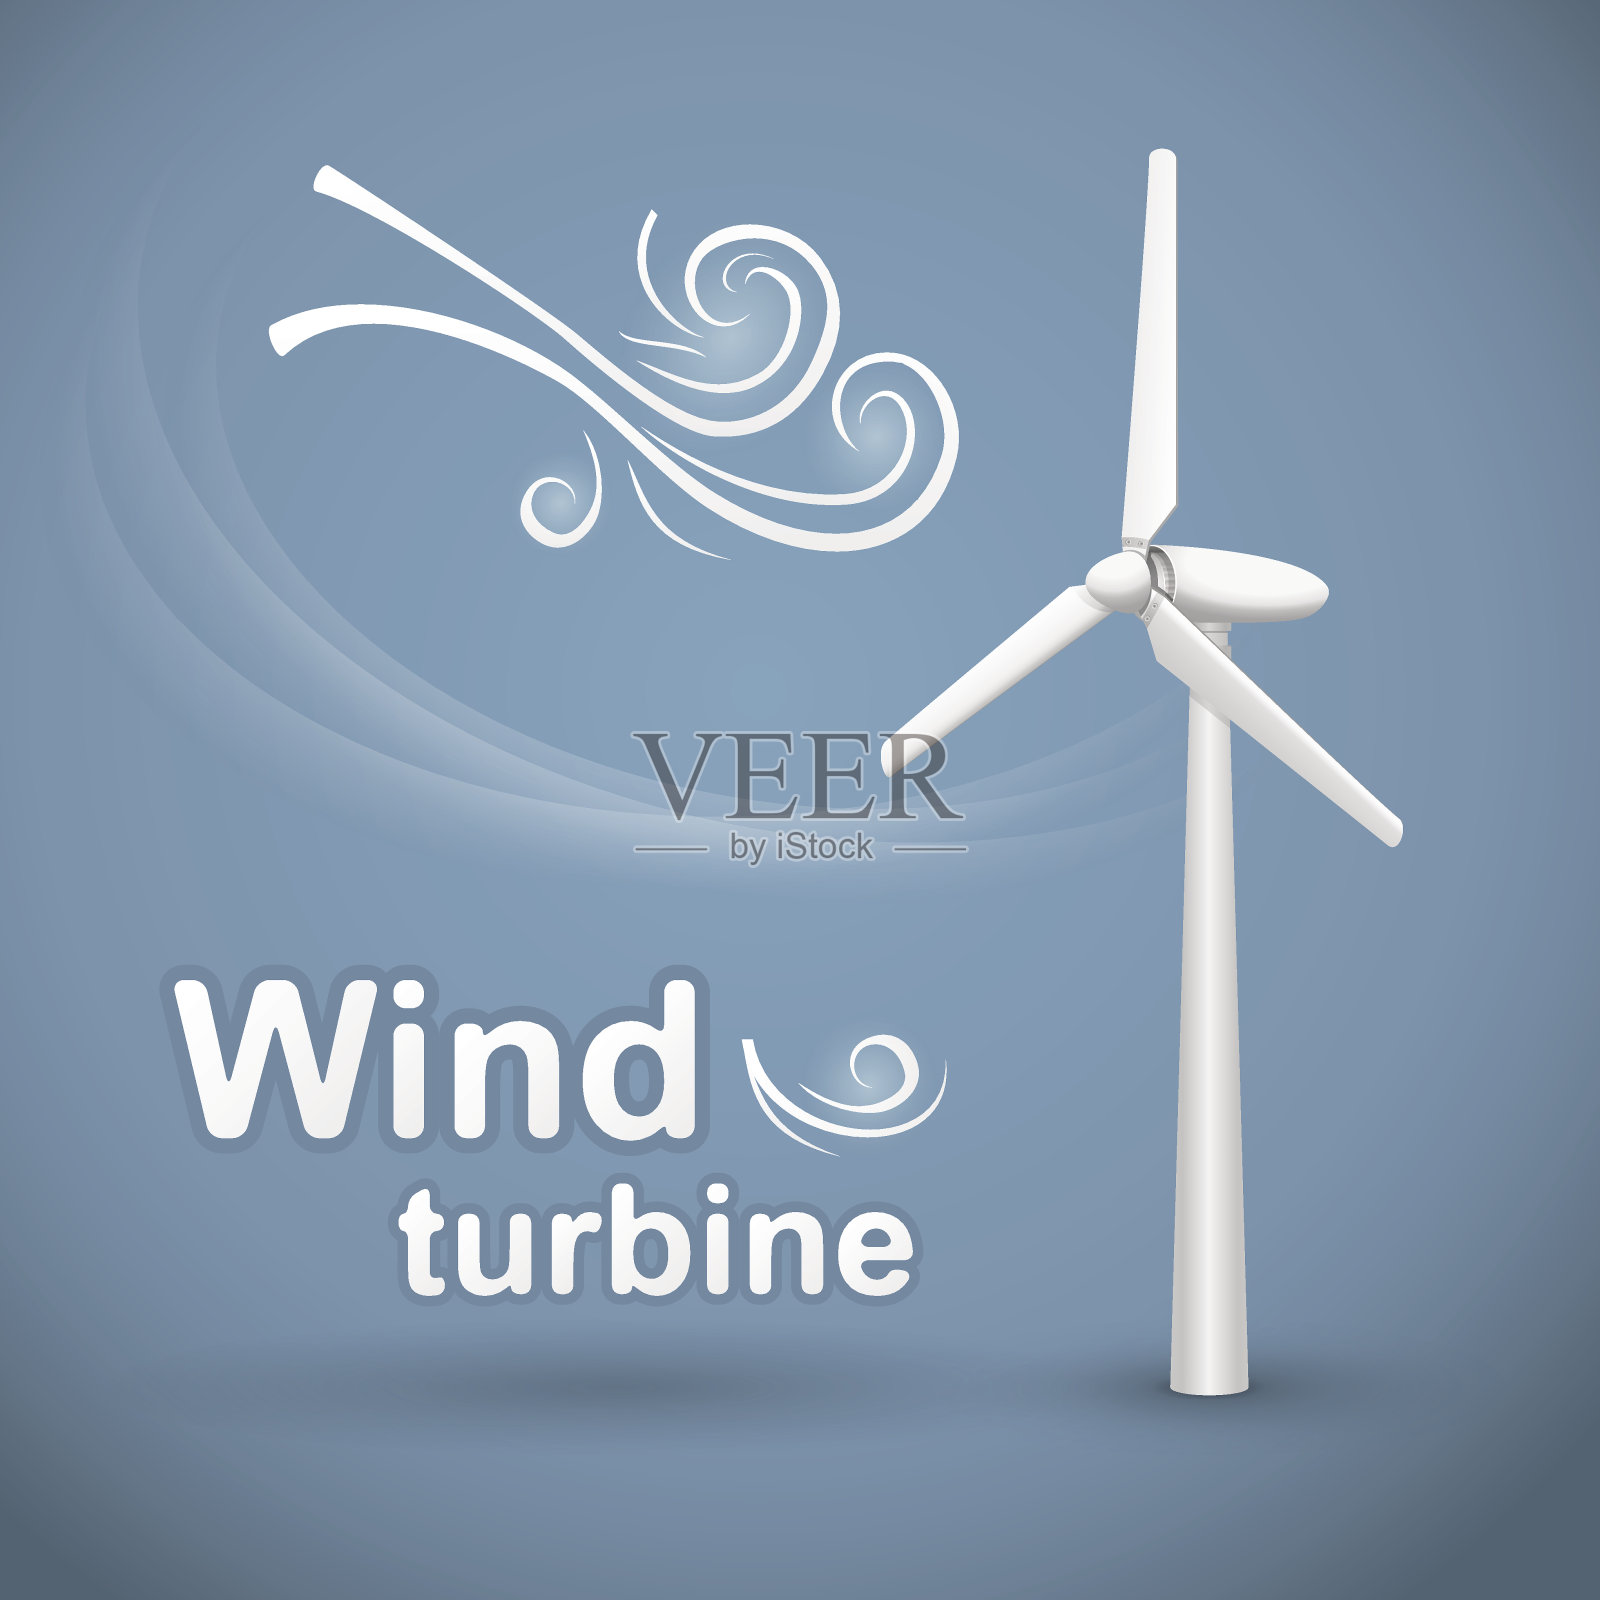 风力涡轮机的背景设计元素图片